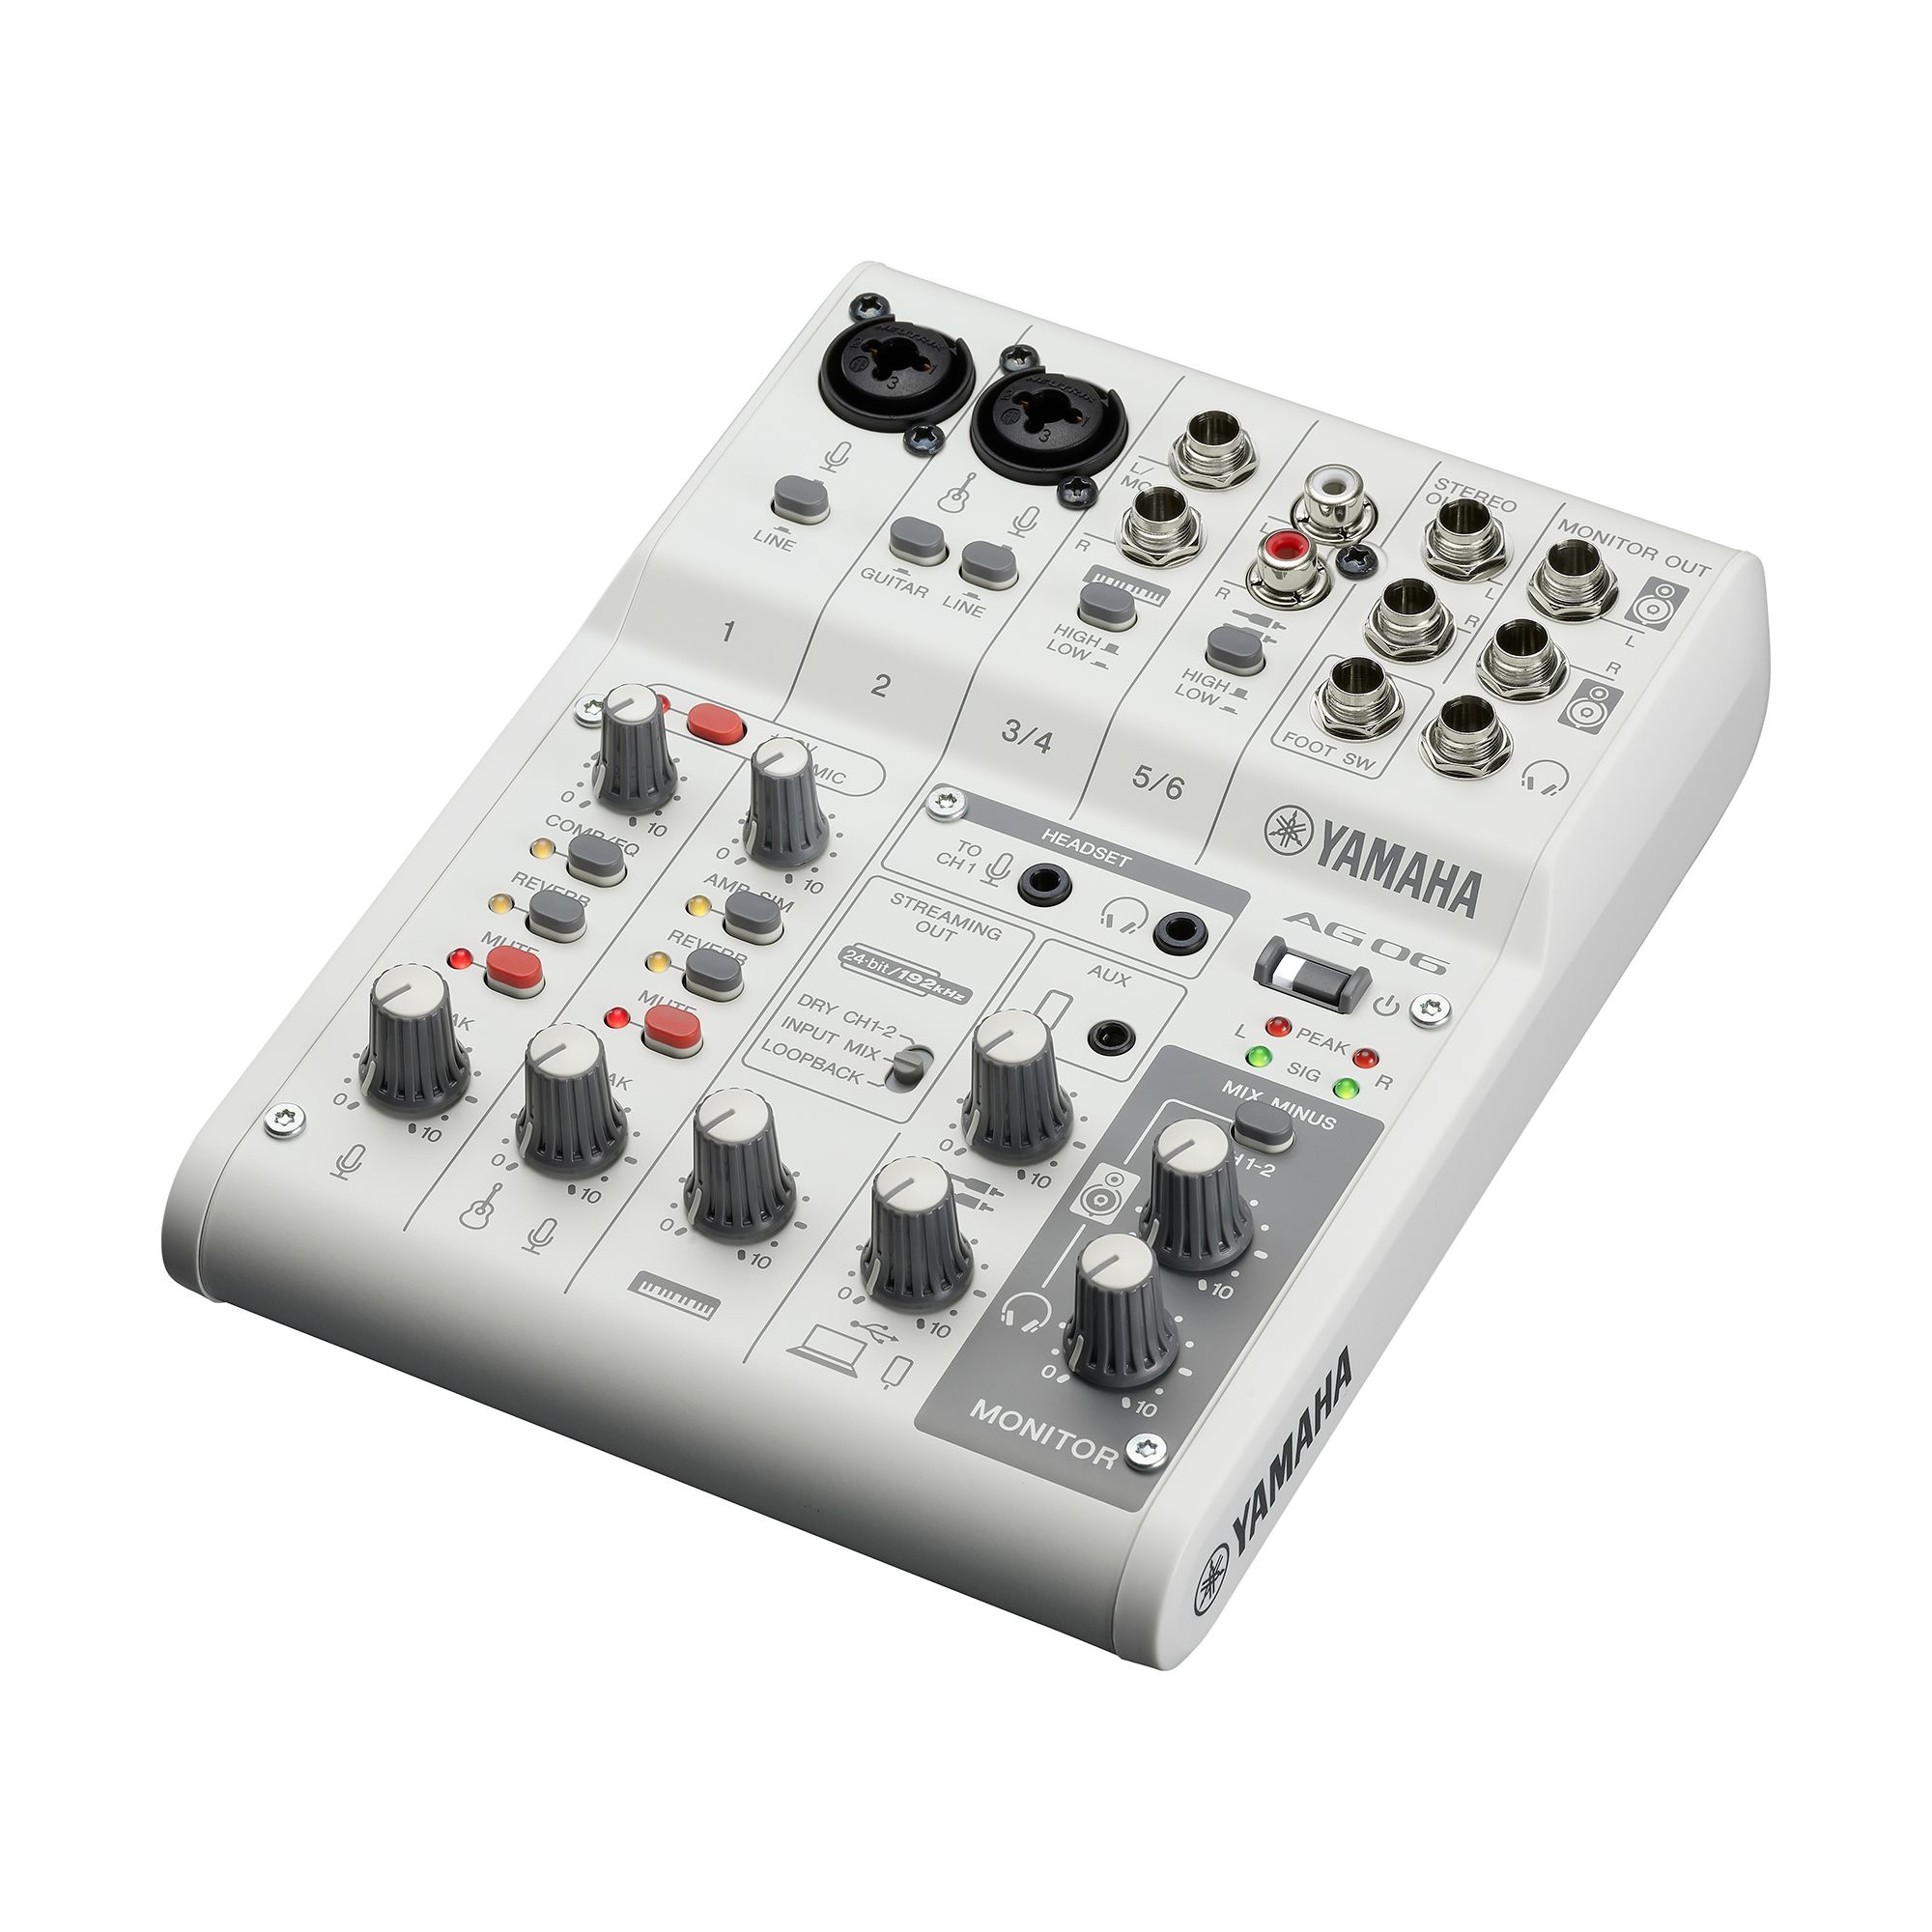 Mini Stereo 6 Channel Mixer, Mixer Audio Professional, Multi-channel Mixer